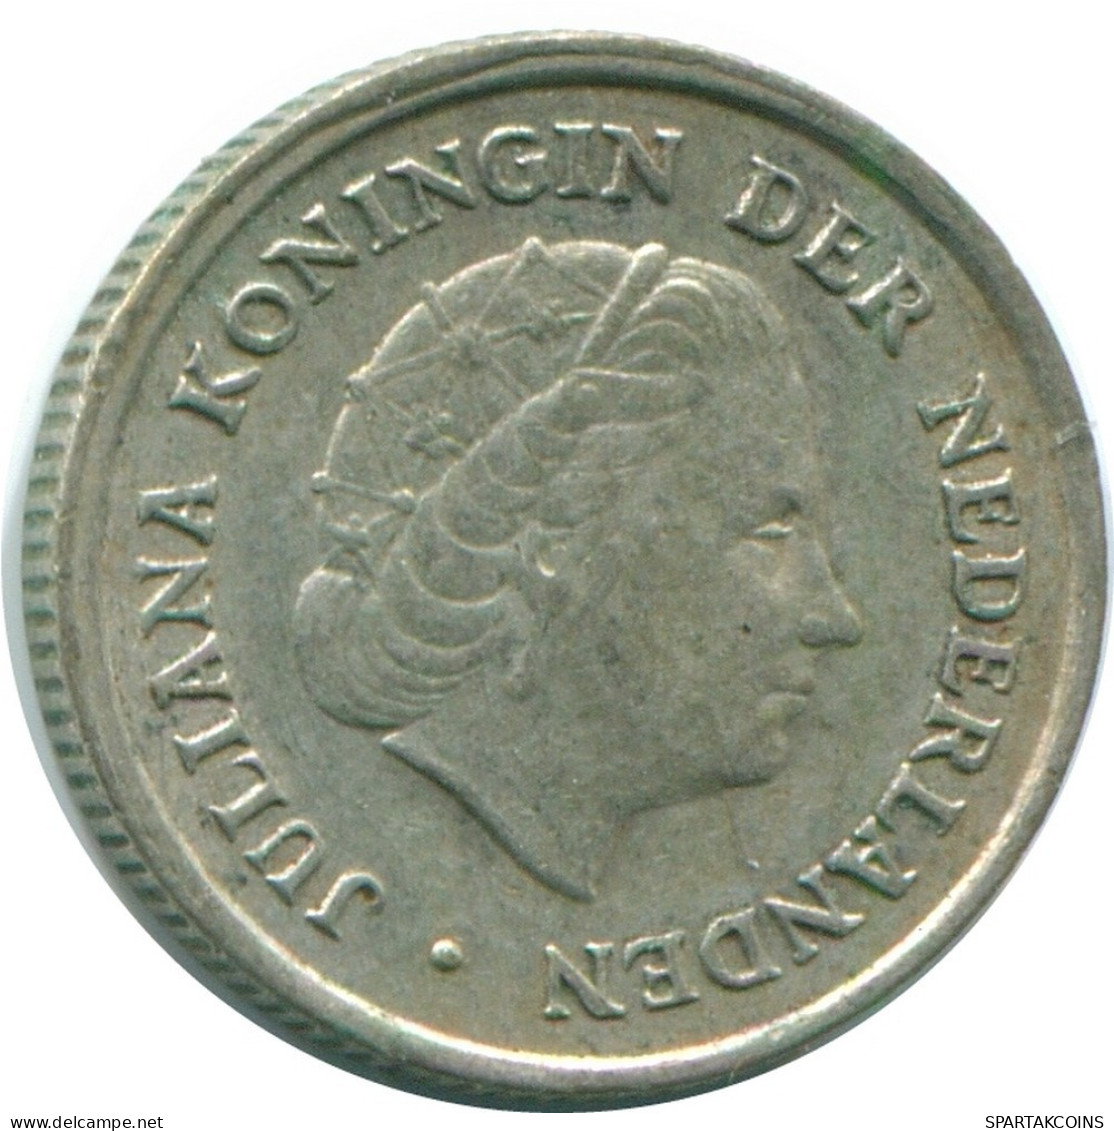 1/10 GULDEN 1970 NIEDERLÄNDISCHE ANTILLEN SILBER Koloniale Münze #NL13113.3.D.A - Niederländische Antillen